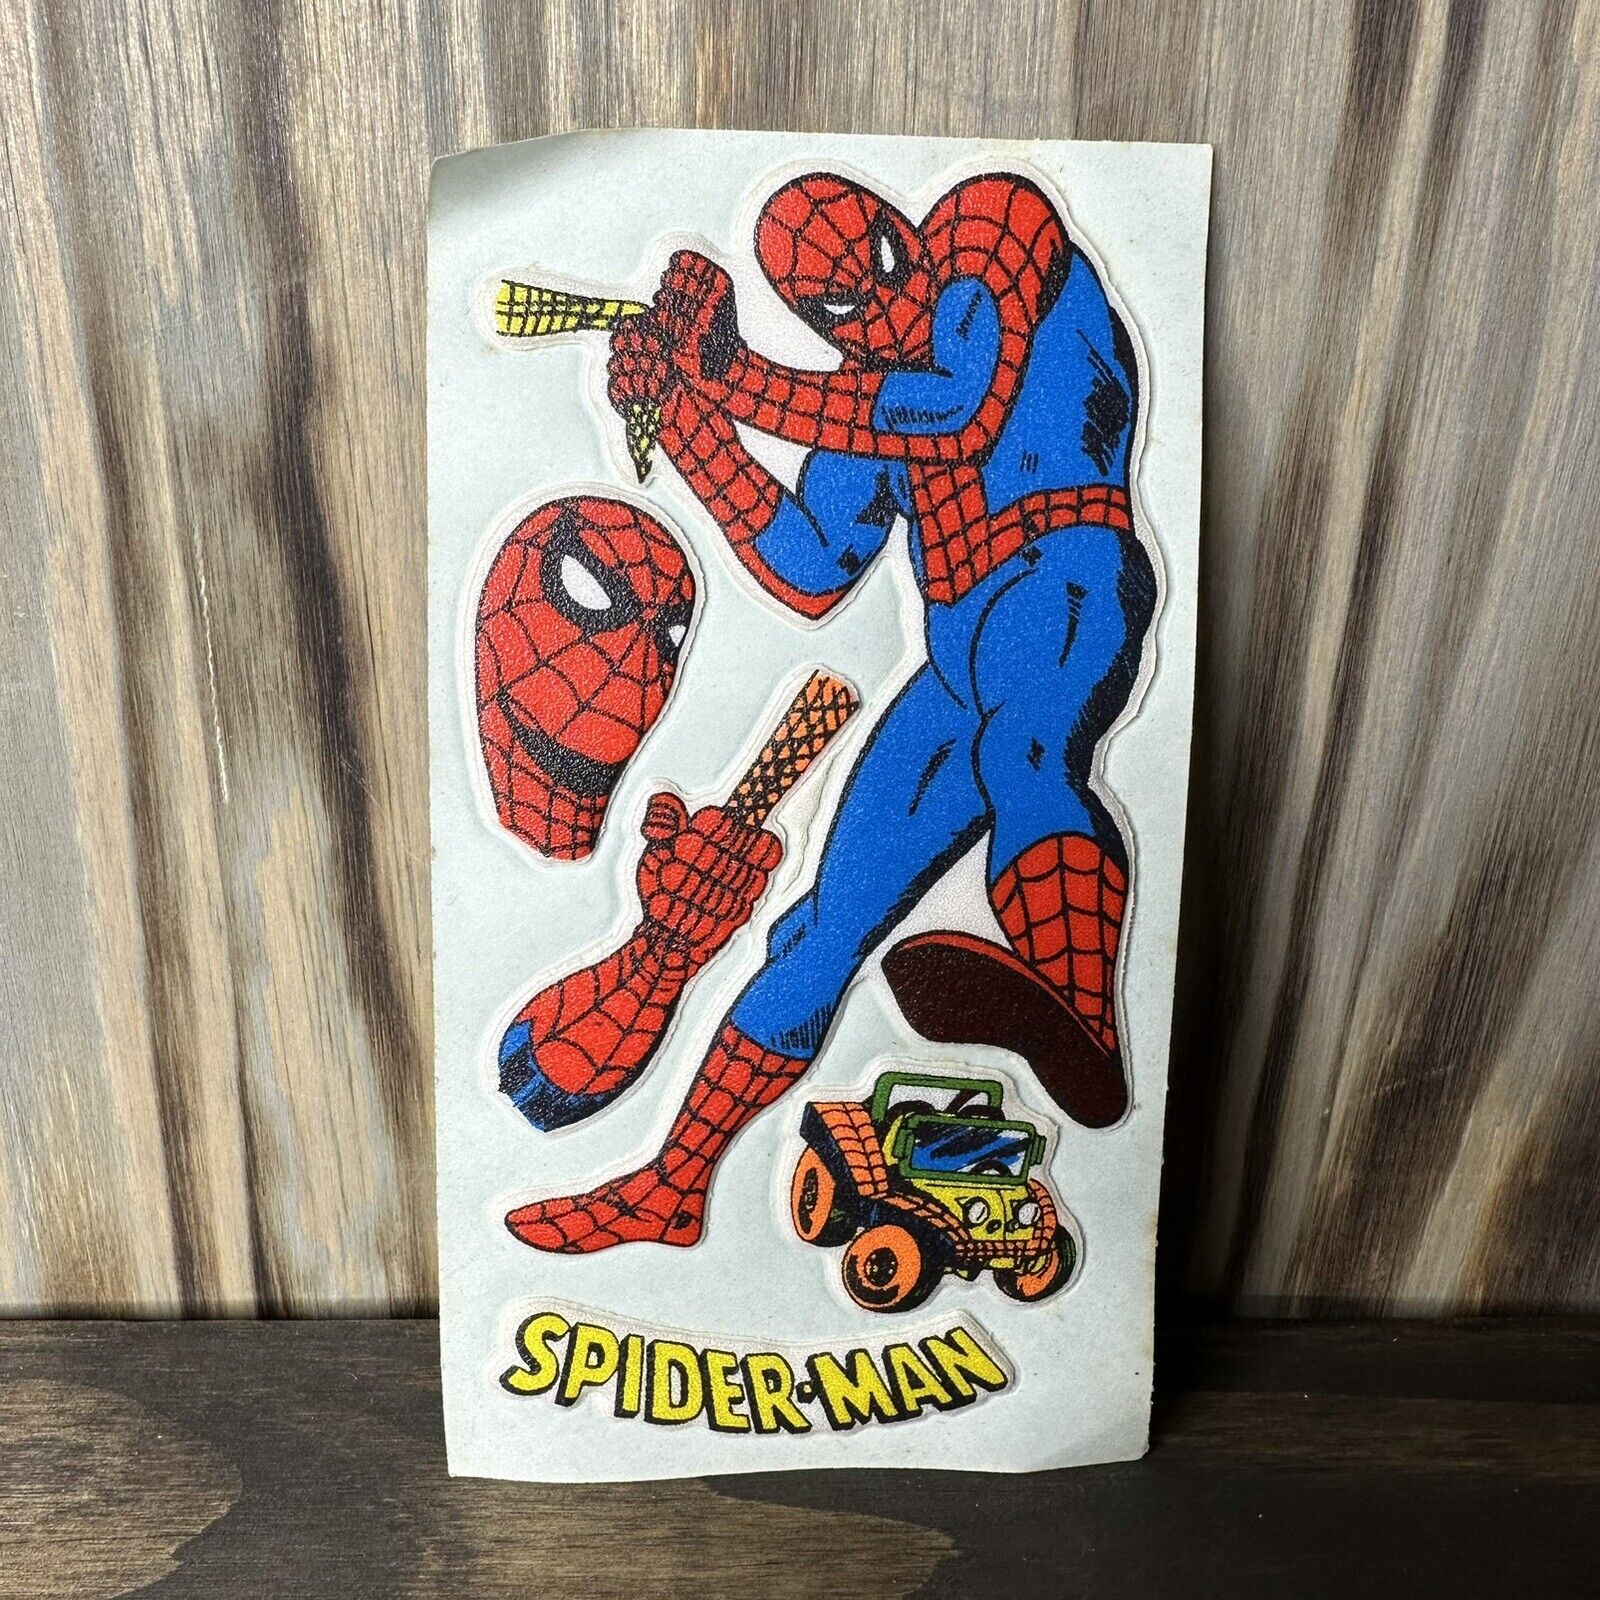 Spider-Man Puffy Sticker Sheet VINTAGE 1980s